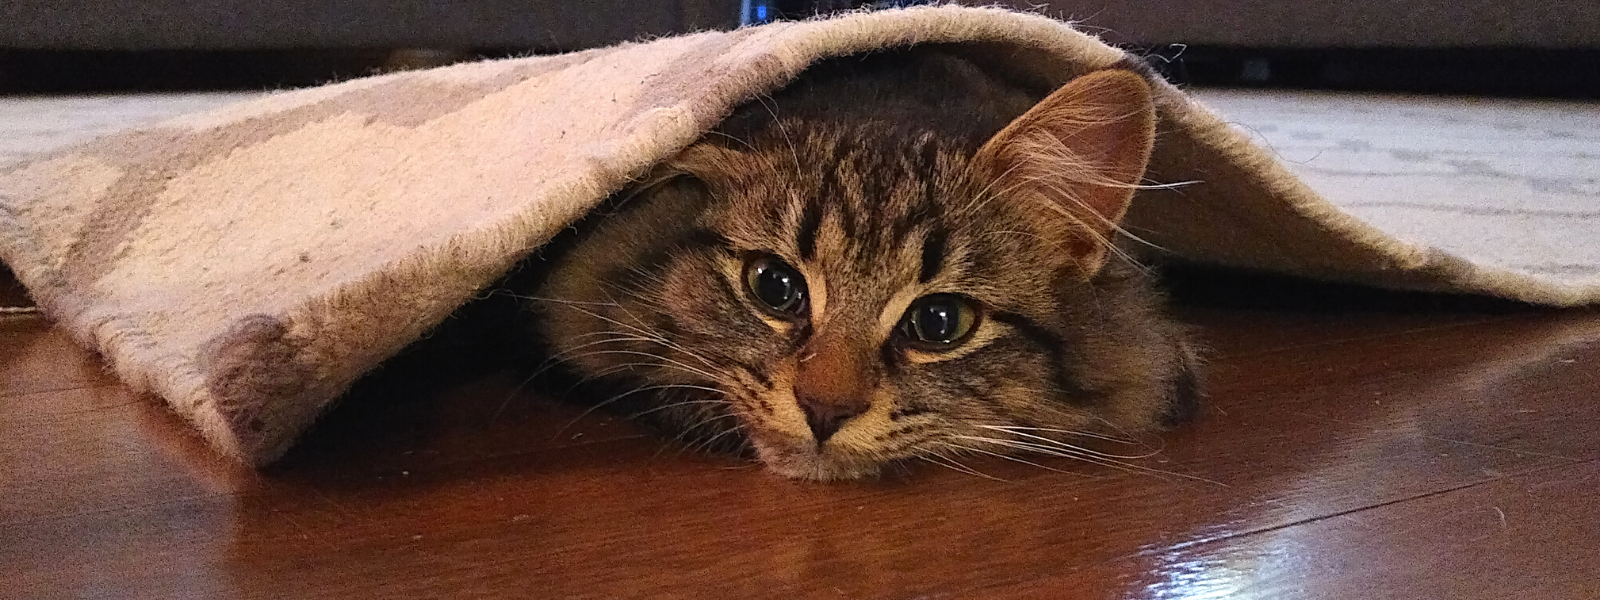 cat under carpet